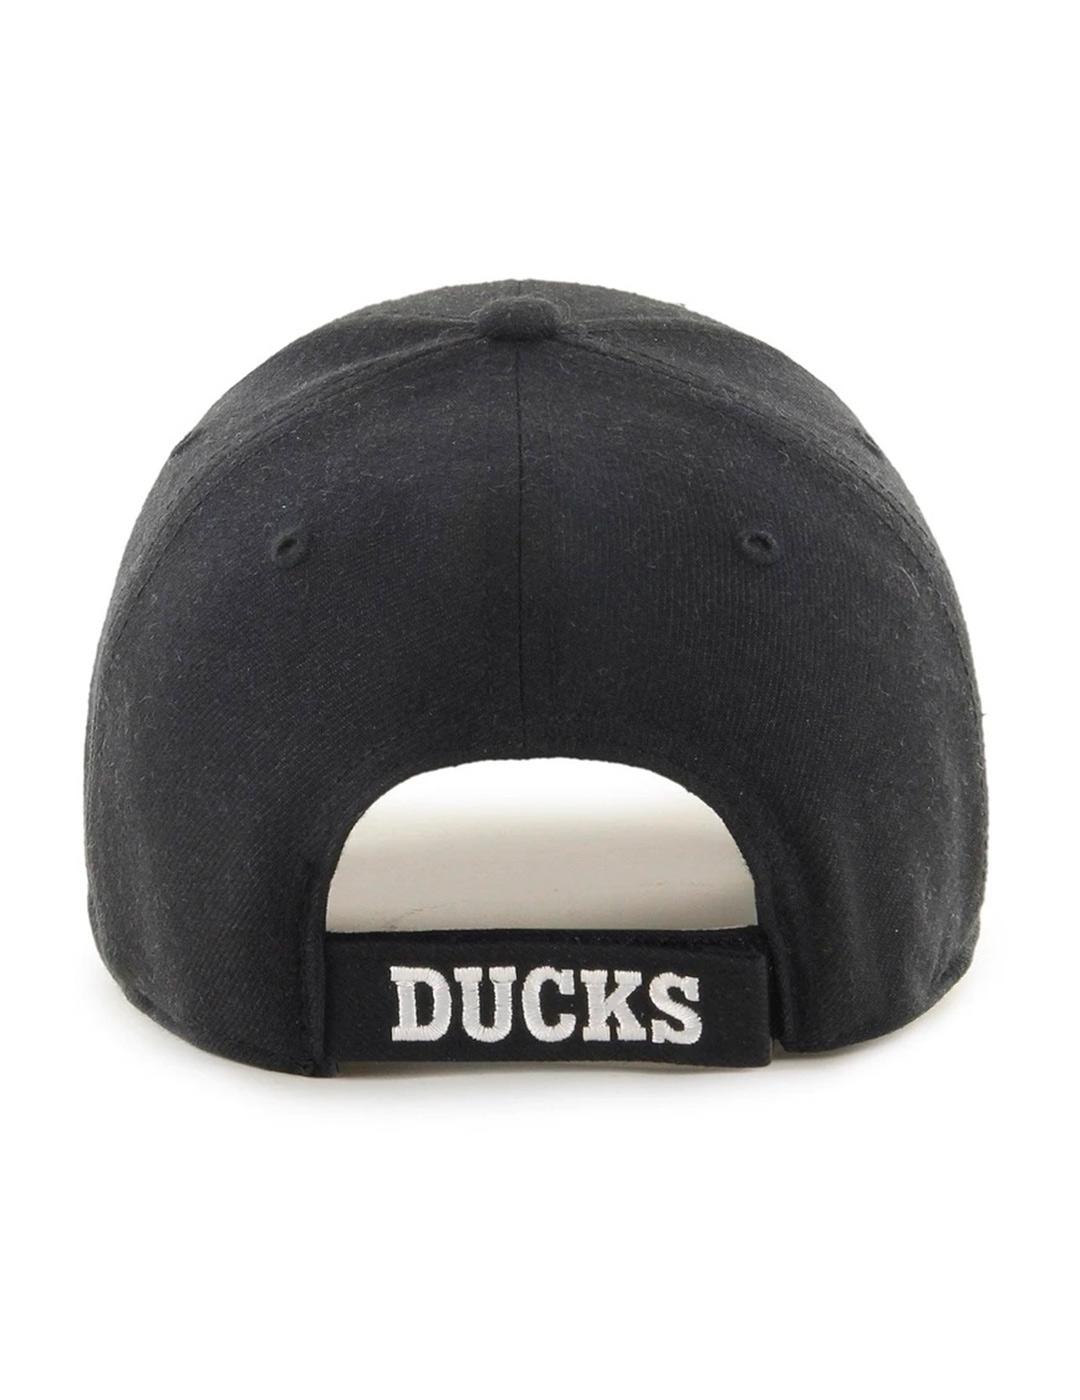 Gorra Brand47 'Anaheim Ducks' Negro